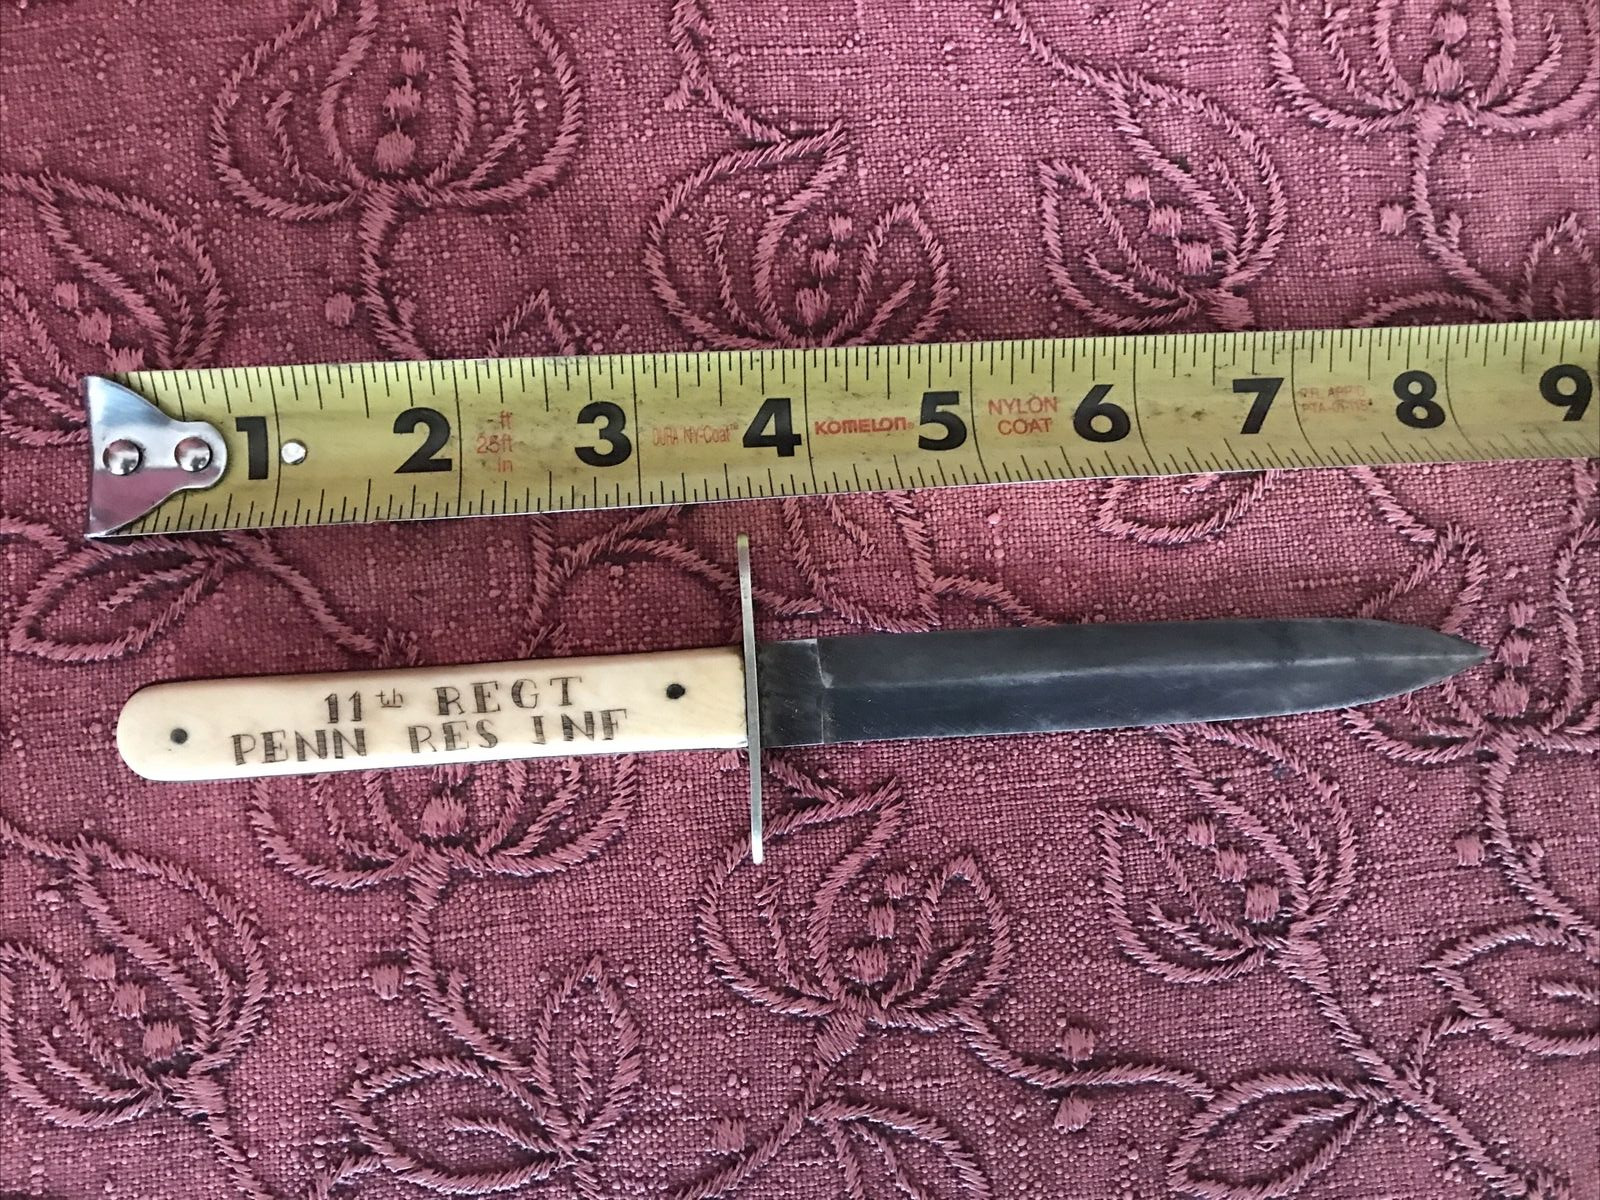 Civil War Era Manhattan Cutlery dagger w/sheath Engraved 11th REGT PENN RES INF